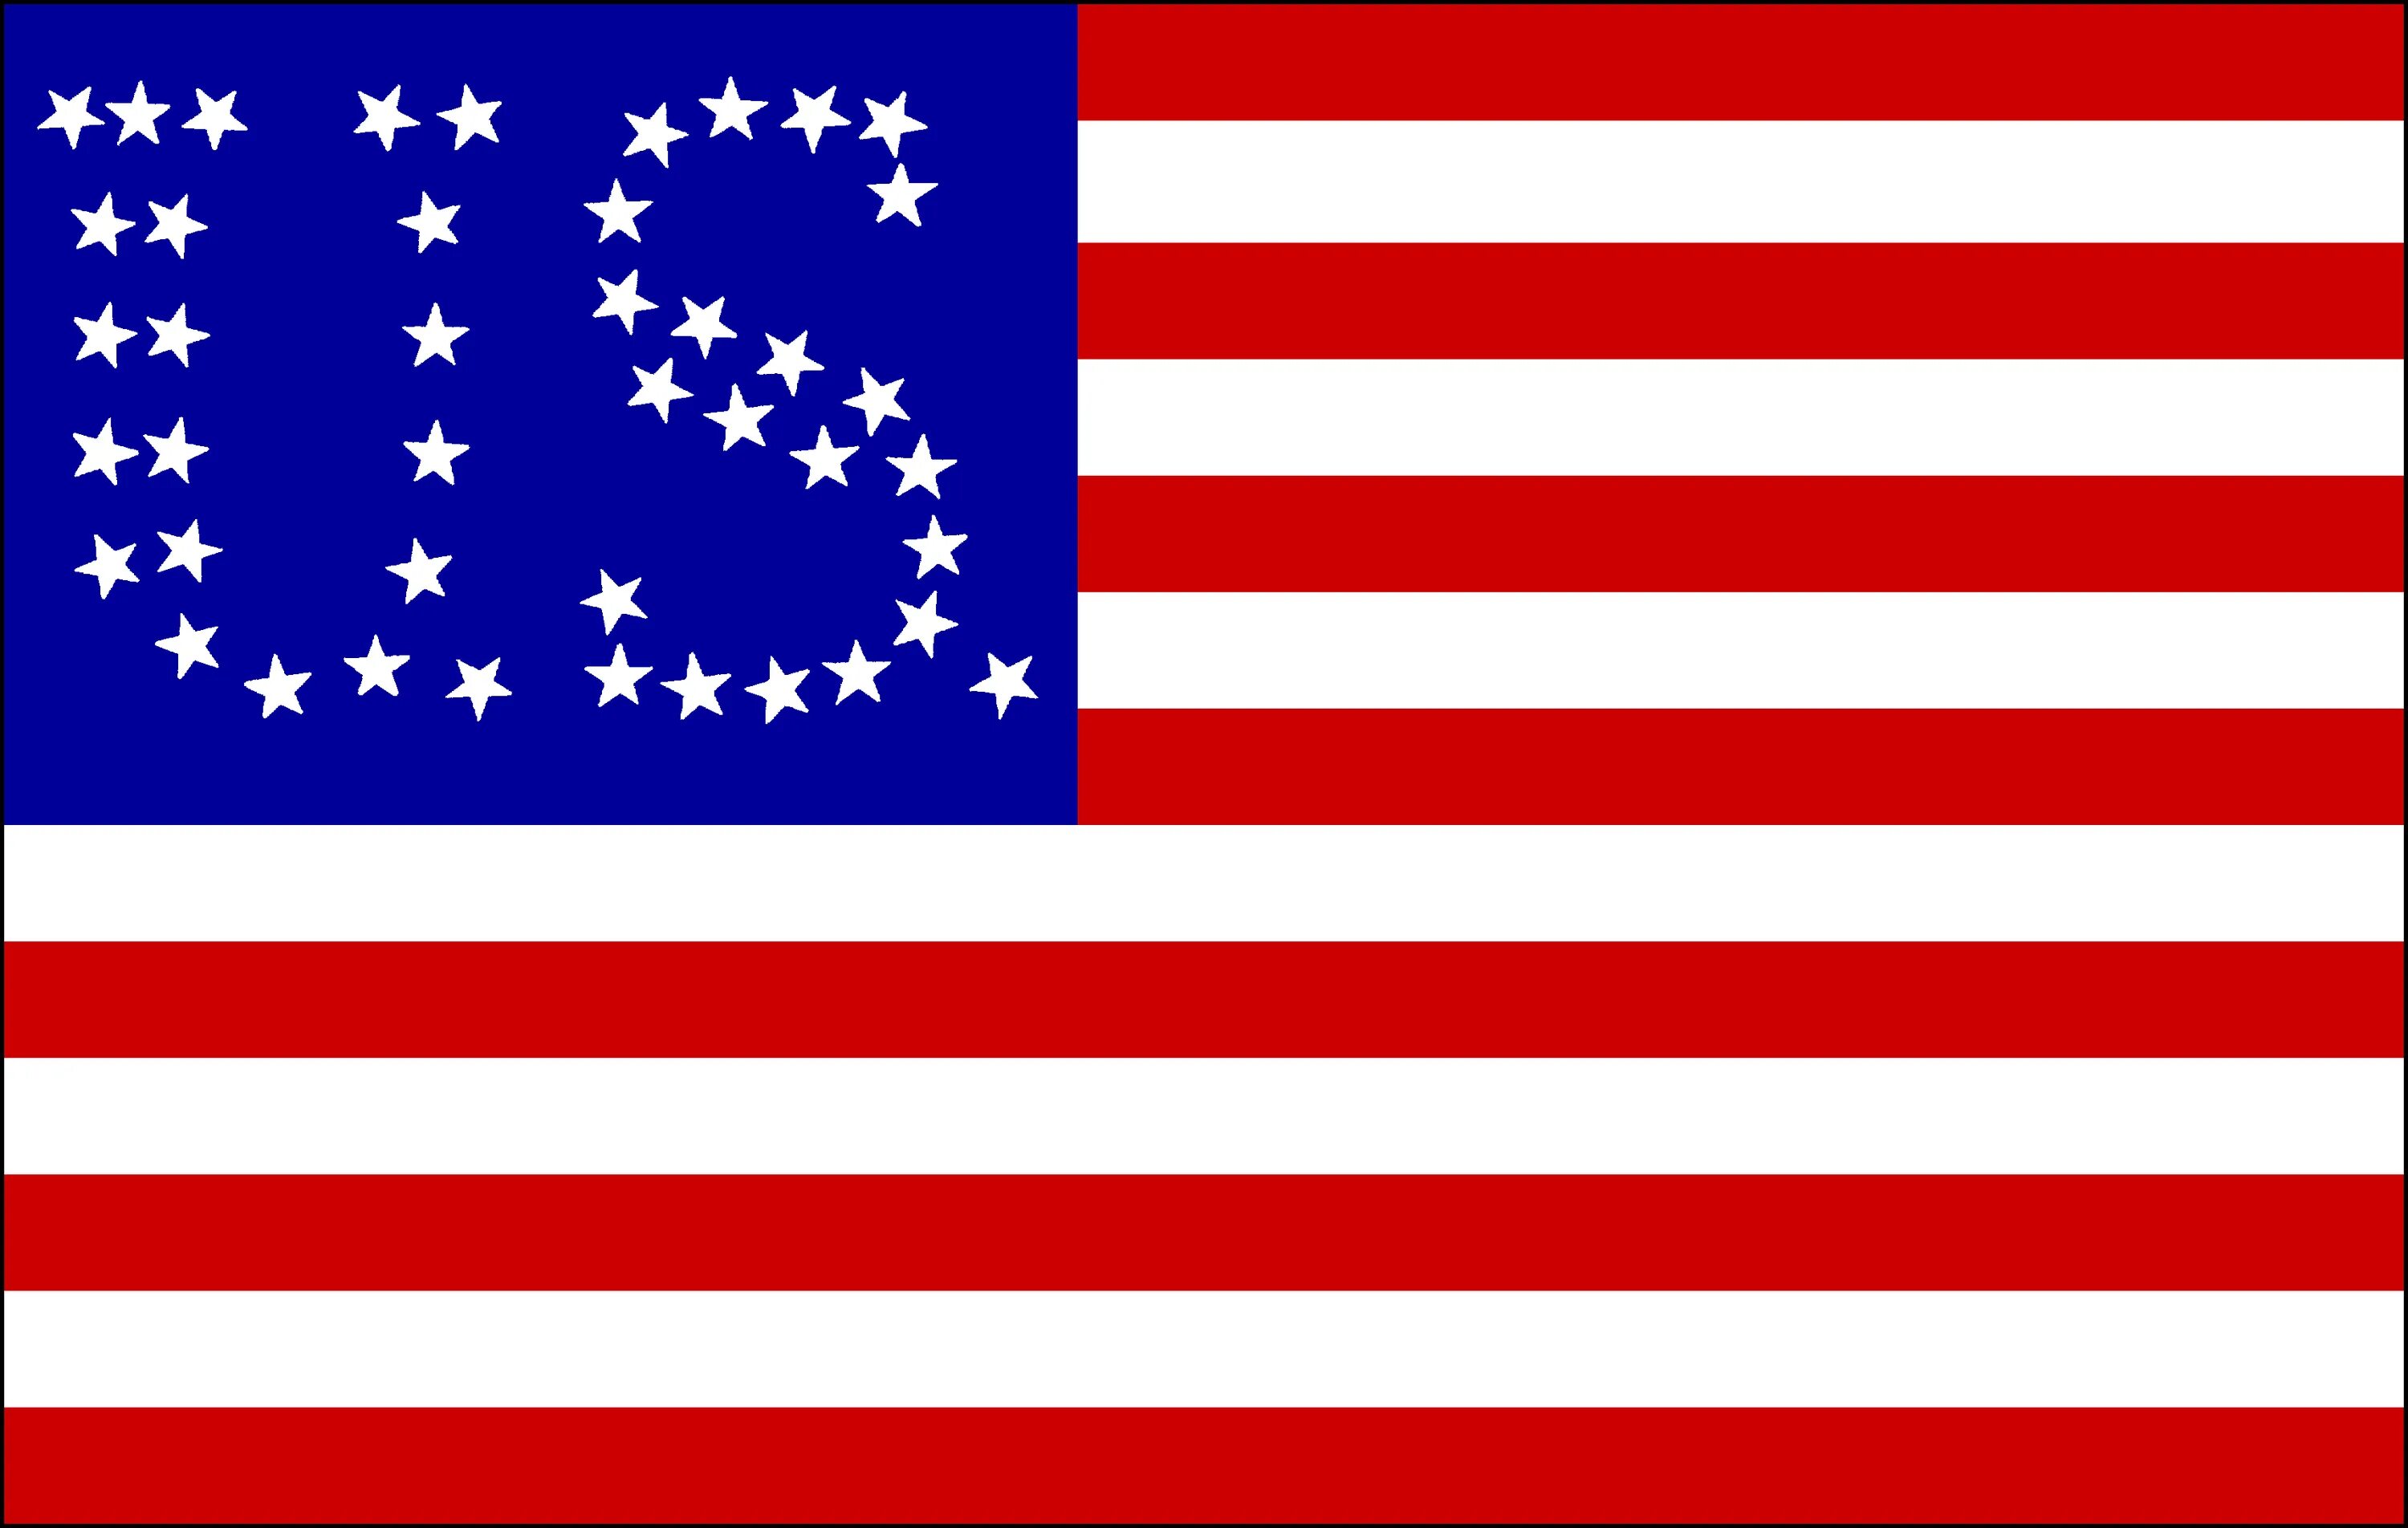 Соединенные штаты кореи. Флаг Соединенных Штатов Кореи и. Флаг Польши, США, Англии. USA 50 Flag States. Разные вариации флаги Америки.